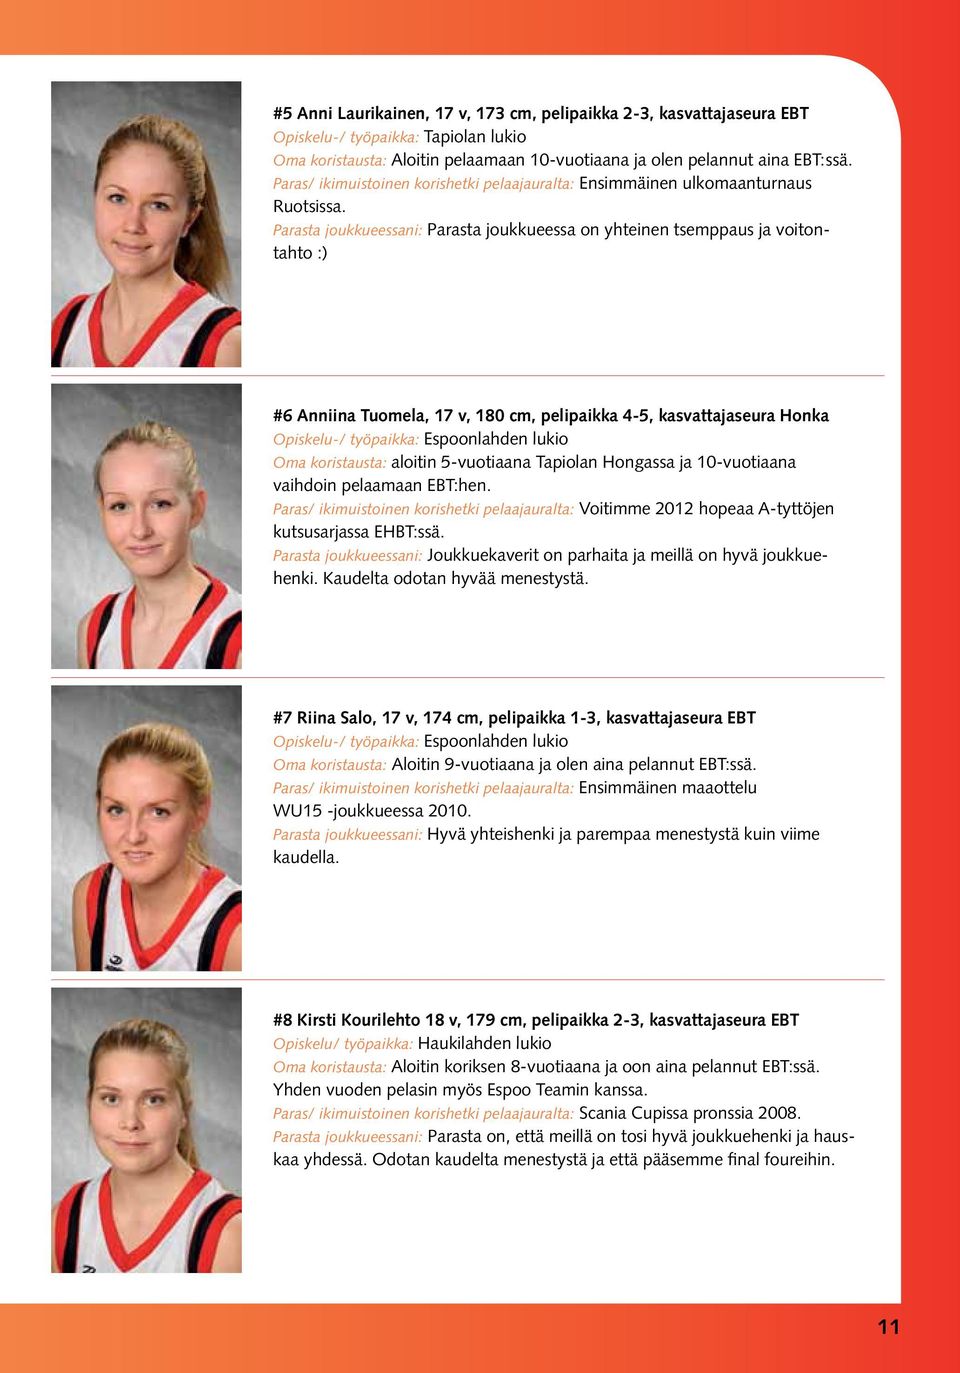 Parasta joukkueessani: Parasta joukkueessa on yhteinen tsemppaus ja voitontahto :) #6 Anniina Tuomela, 17 v, 180 cm, pelipaikka 4-5, kasvattajaseura Honka Opiskelu-/ työpaikka: Espoonlahden lukio Oma